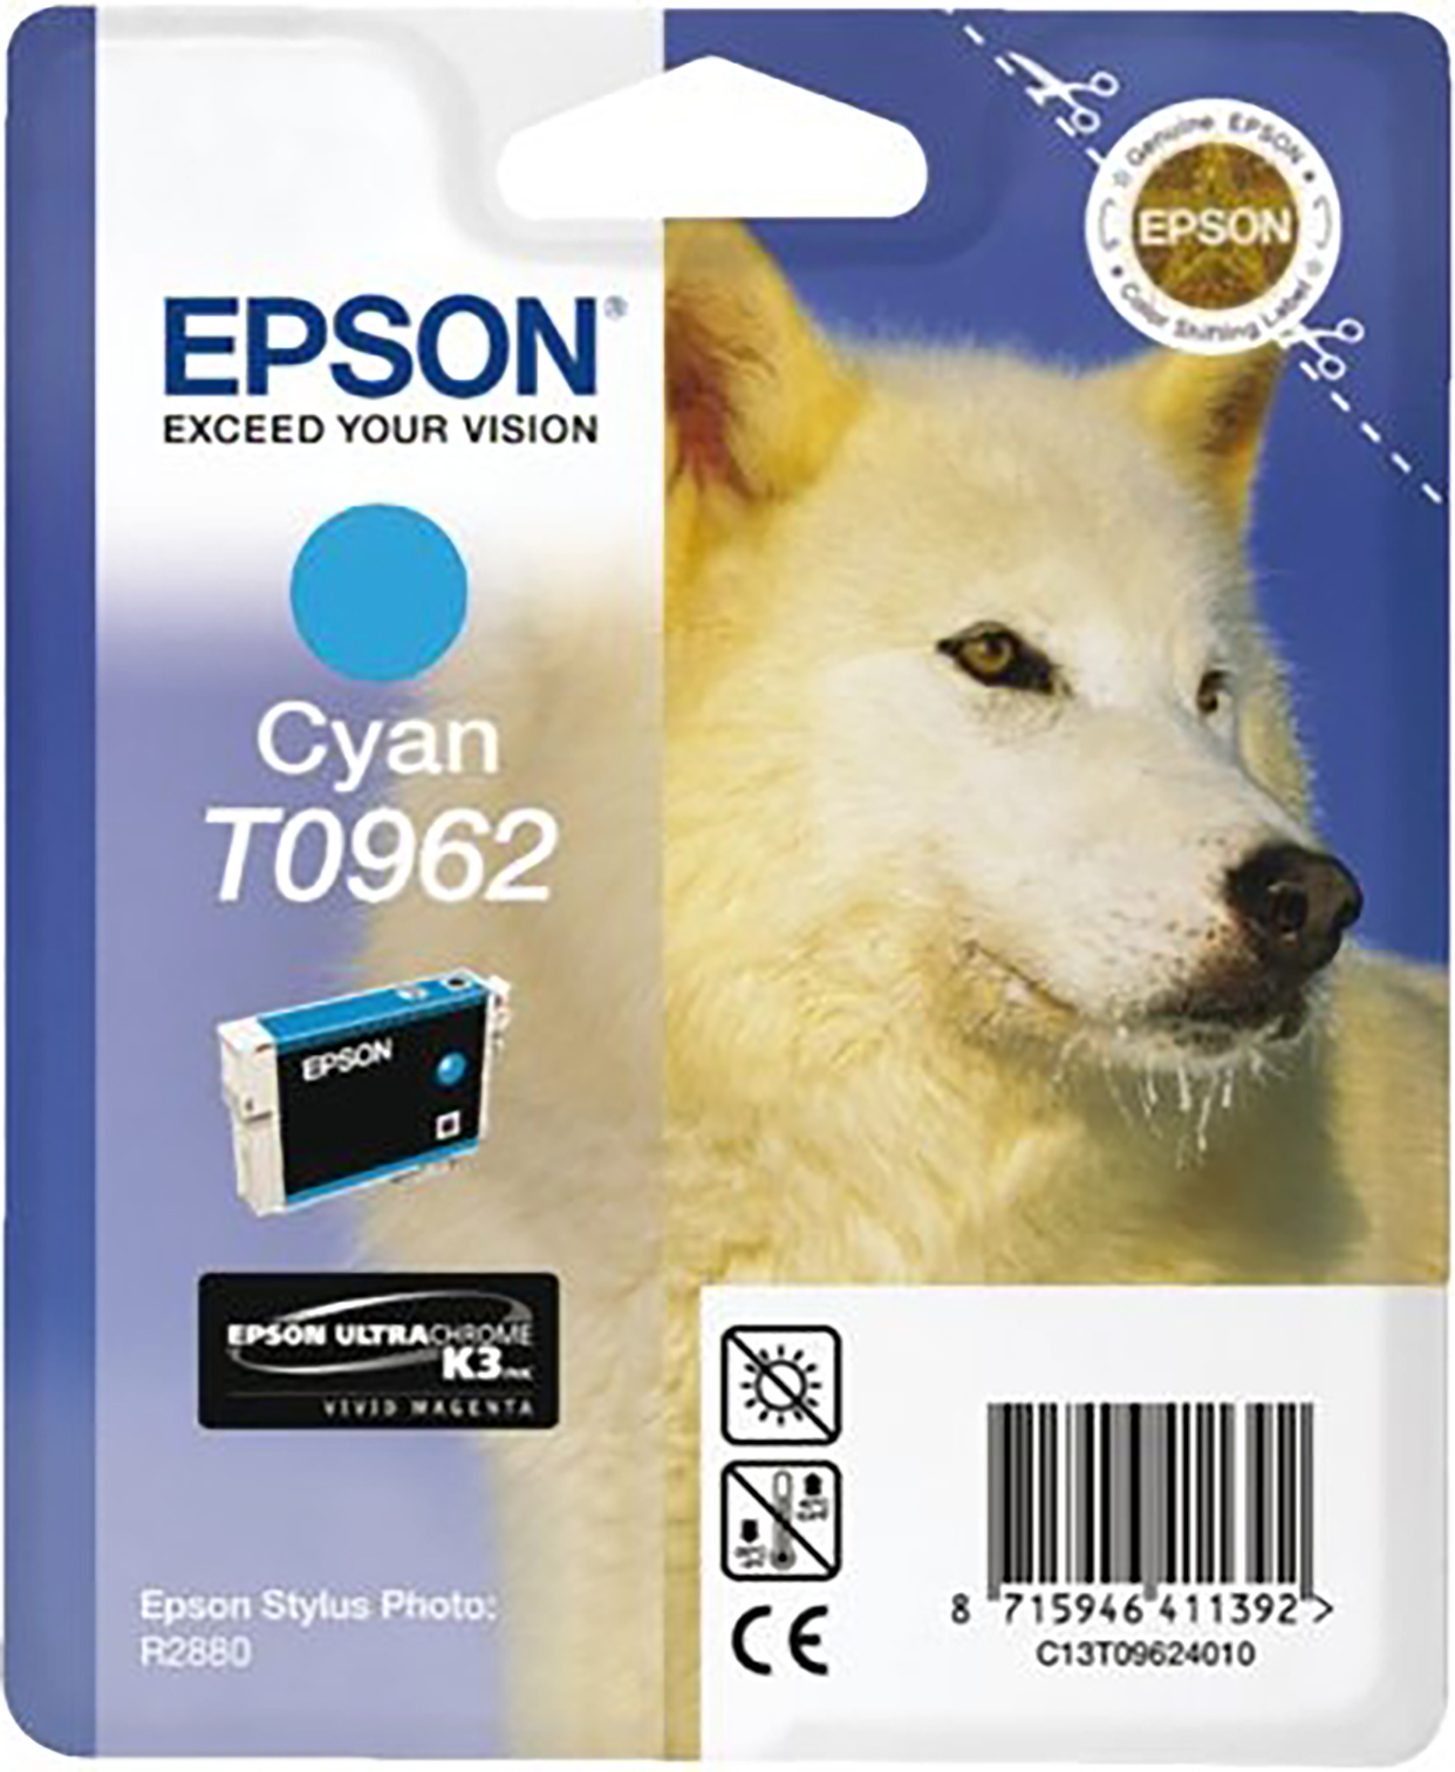 [5701178] Bläck Epson T0962 cyan